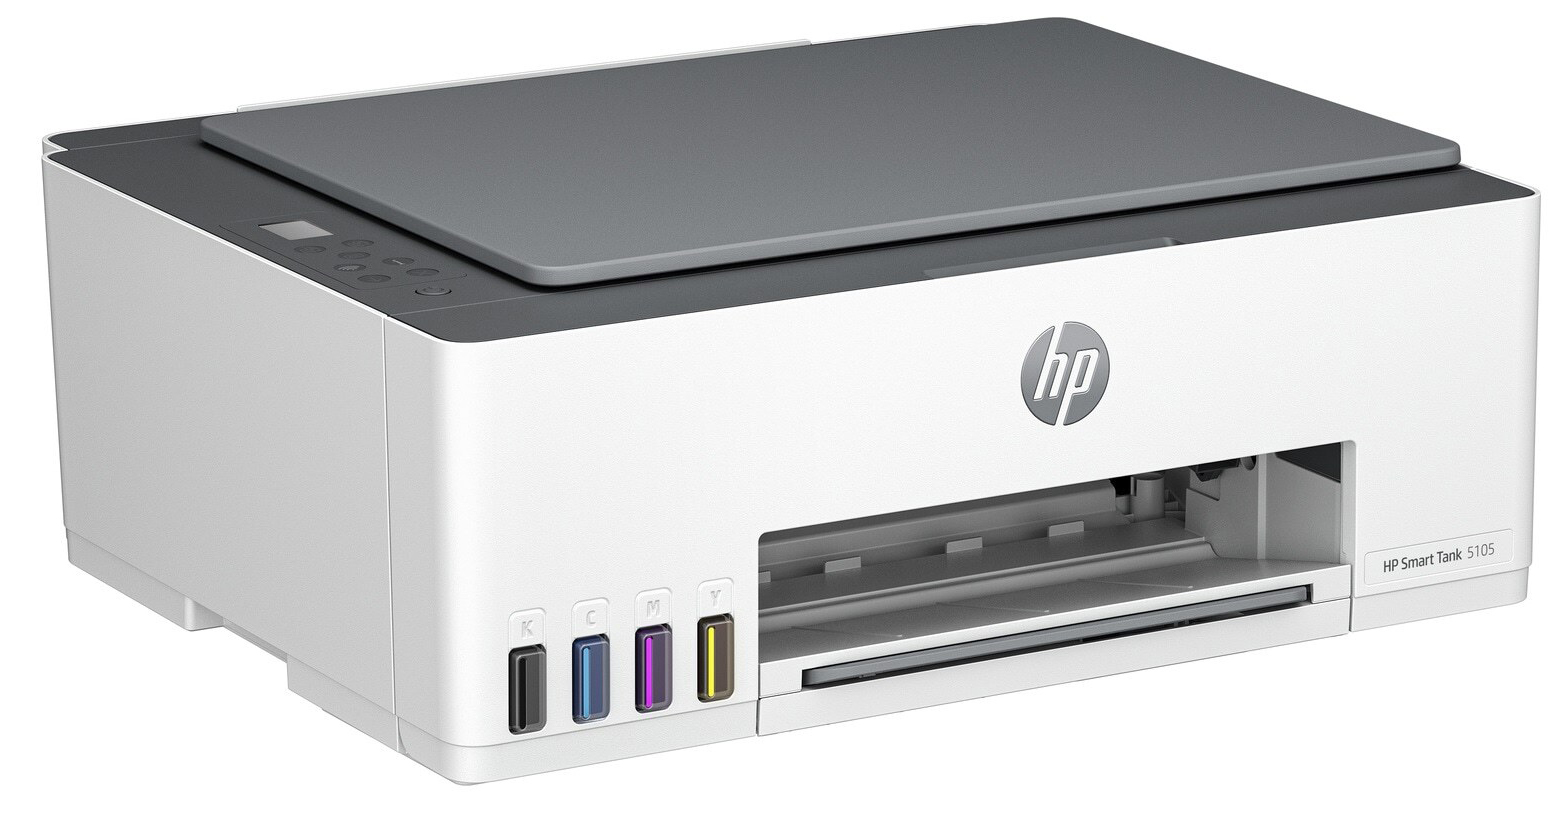 HP - Impresora de Inyección de Tinta HP Smart Tank 5105 All-in-ONE WiFi